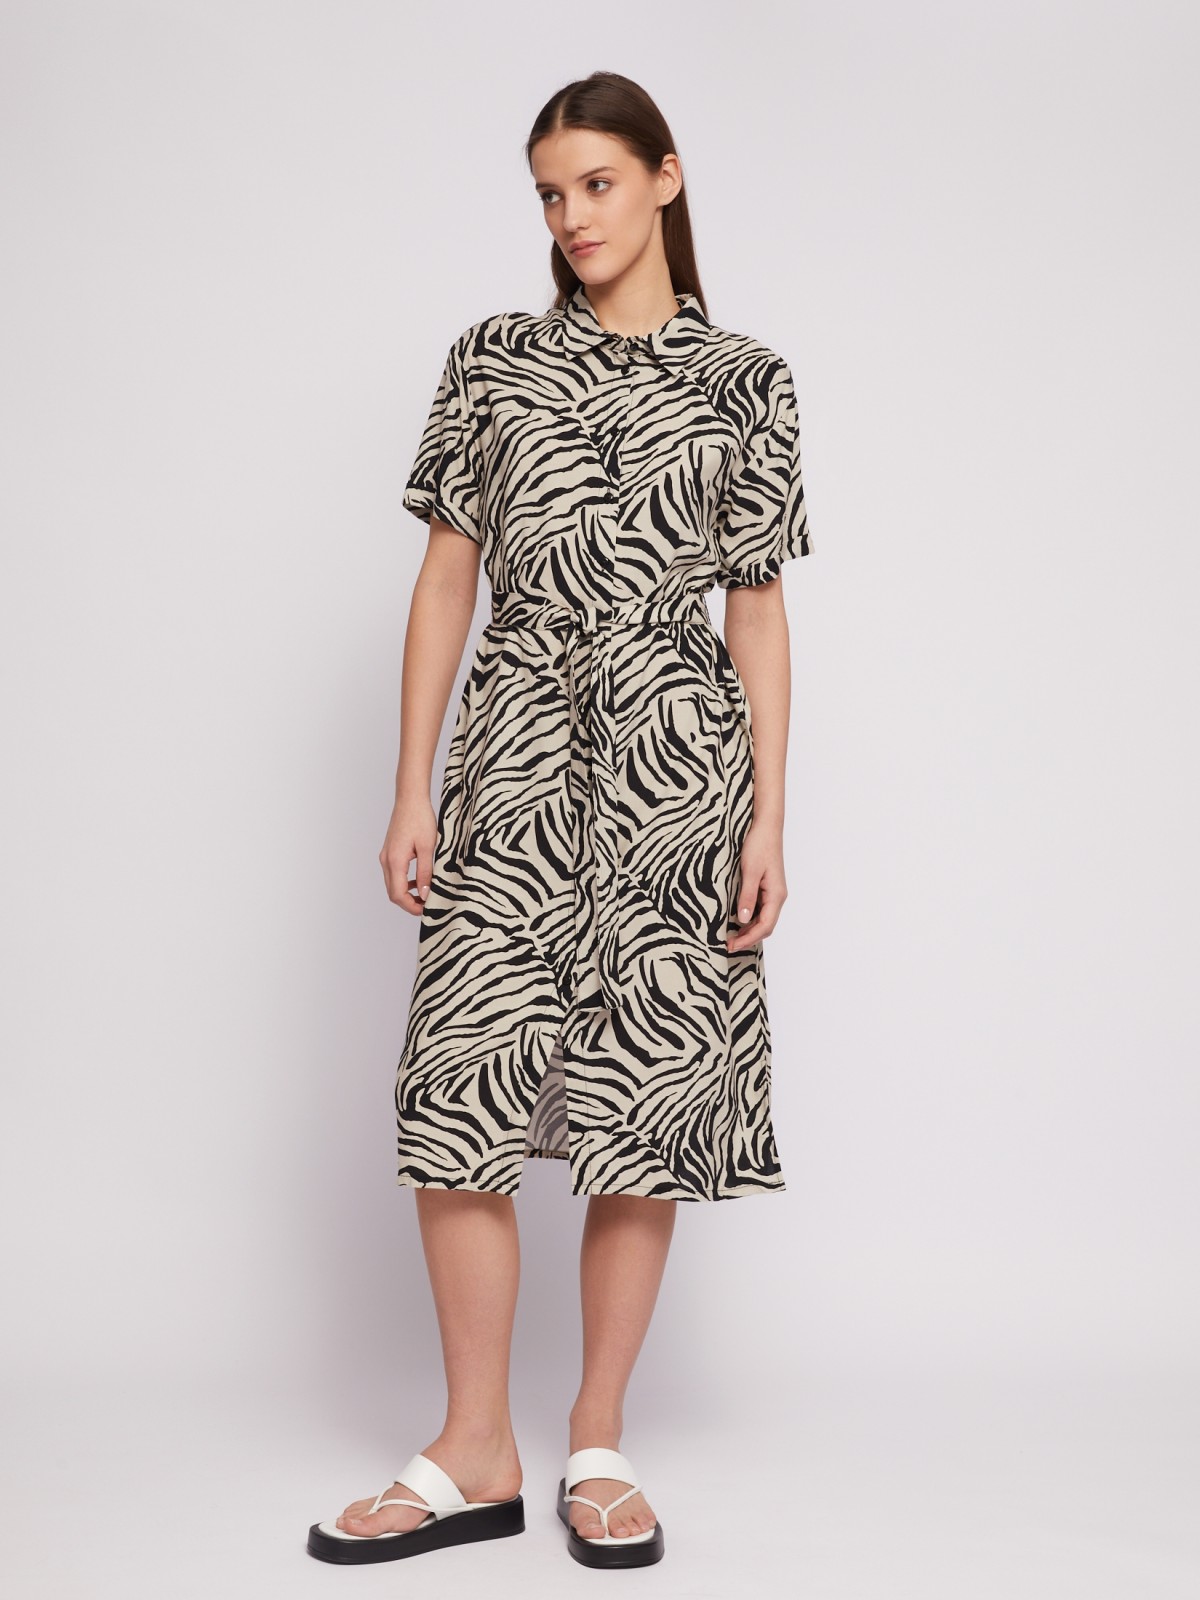 Платье-рубашка с поясом и принтом в полоску zolla N24218259013, цвет черный, размер S - фото 2